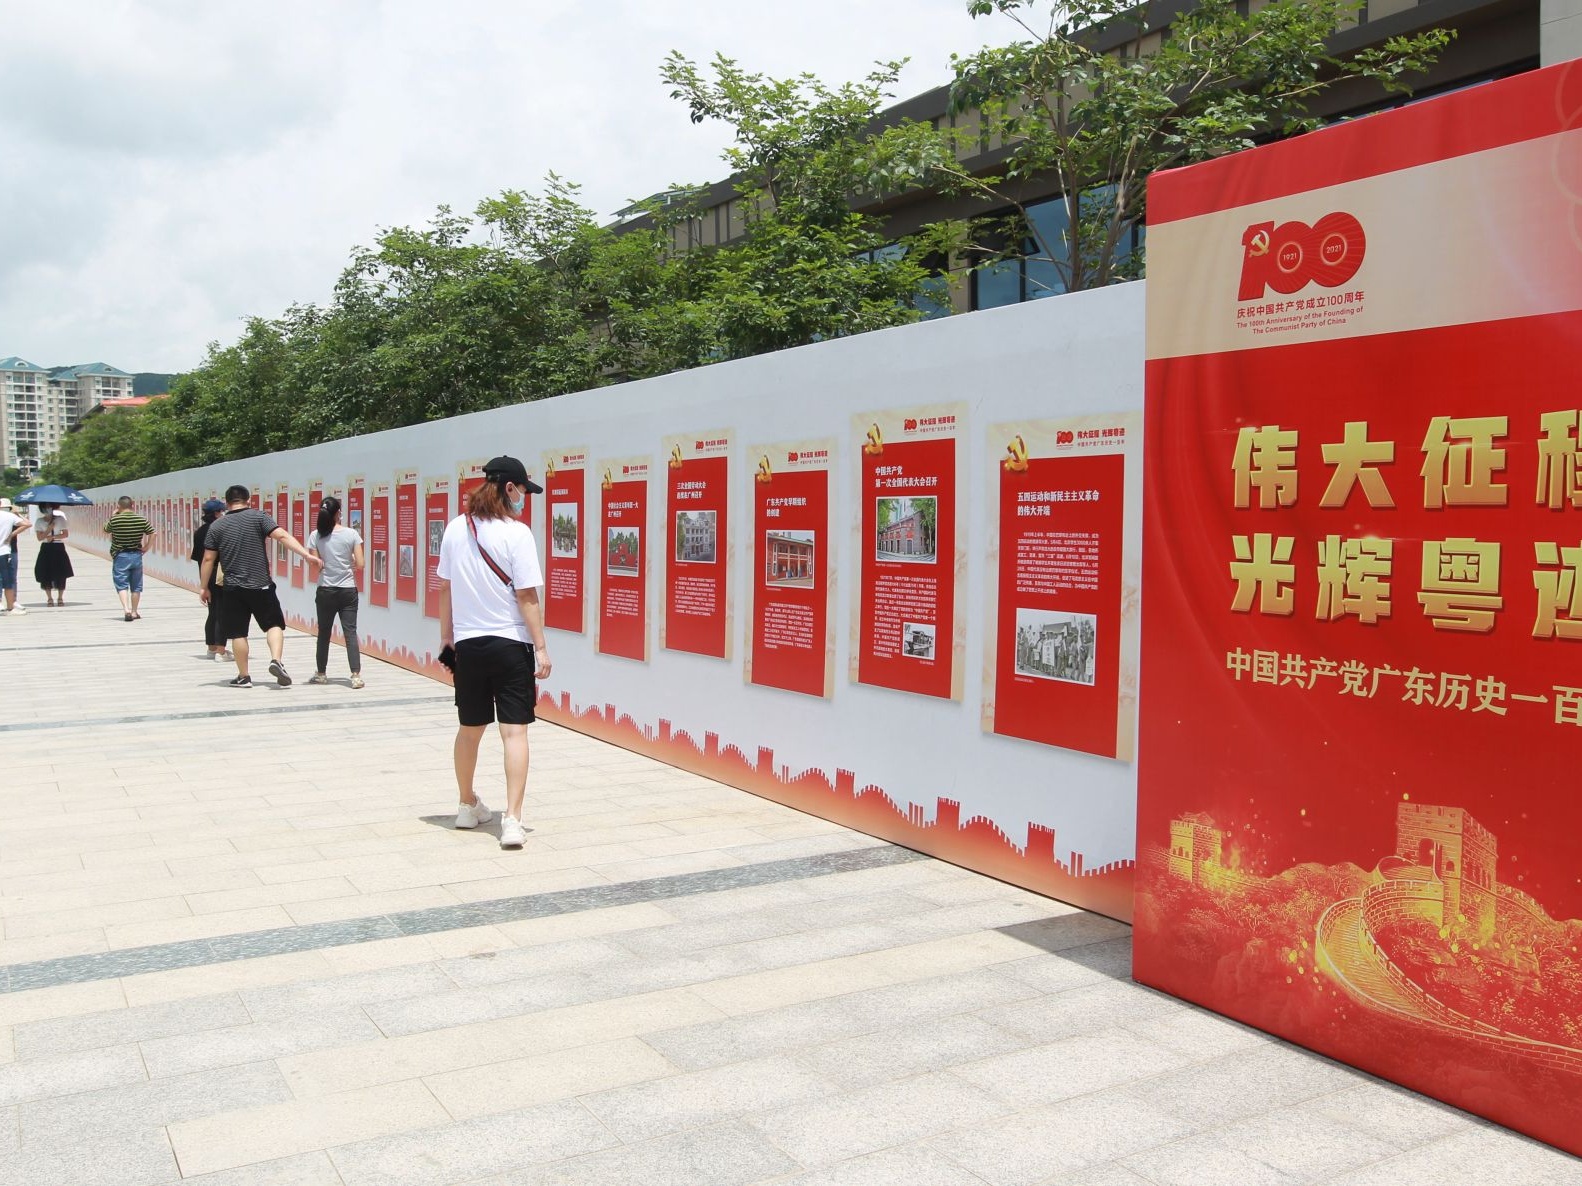 东莞市樟木头镇百米长廊展示广东百年党史